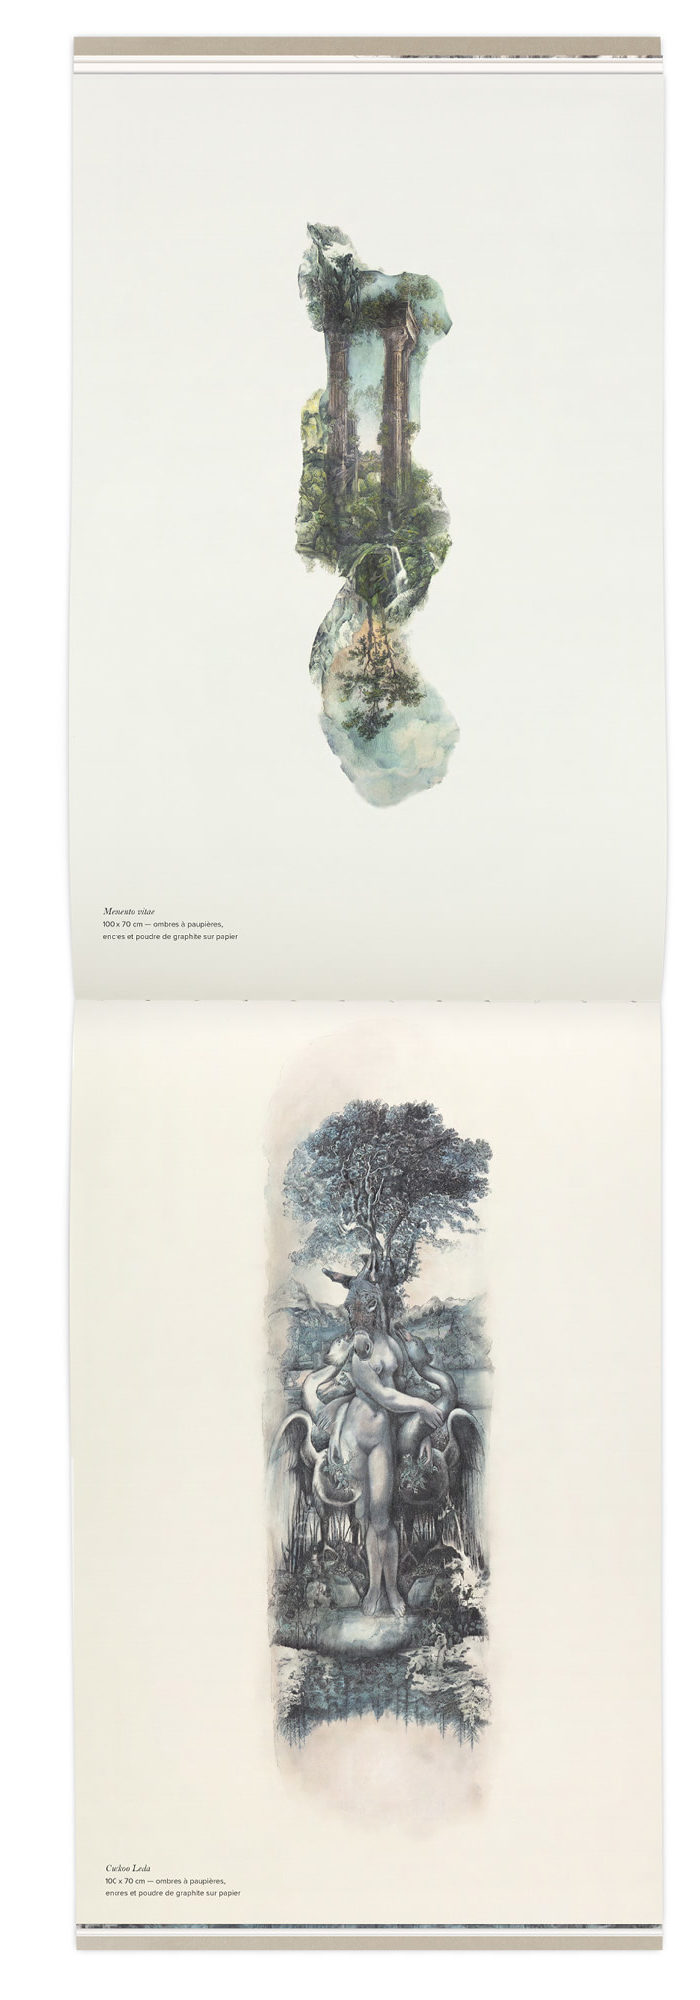 Petits formats des paysages en couleurs présentés dans le son livre Quelque part dans l'inachevé, design graphique IchetKar